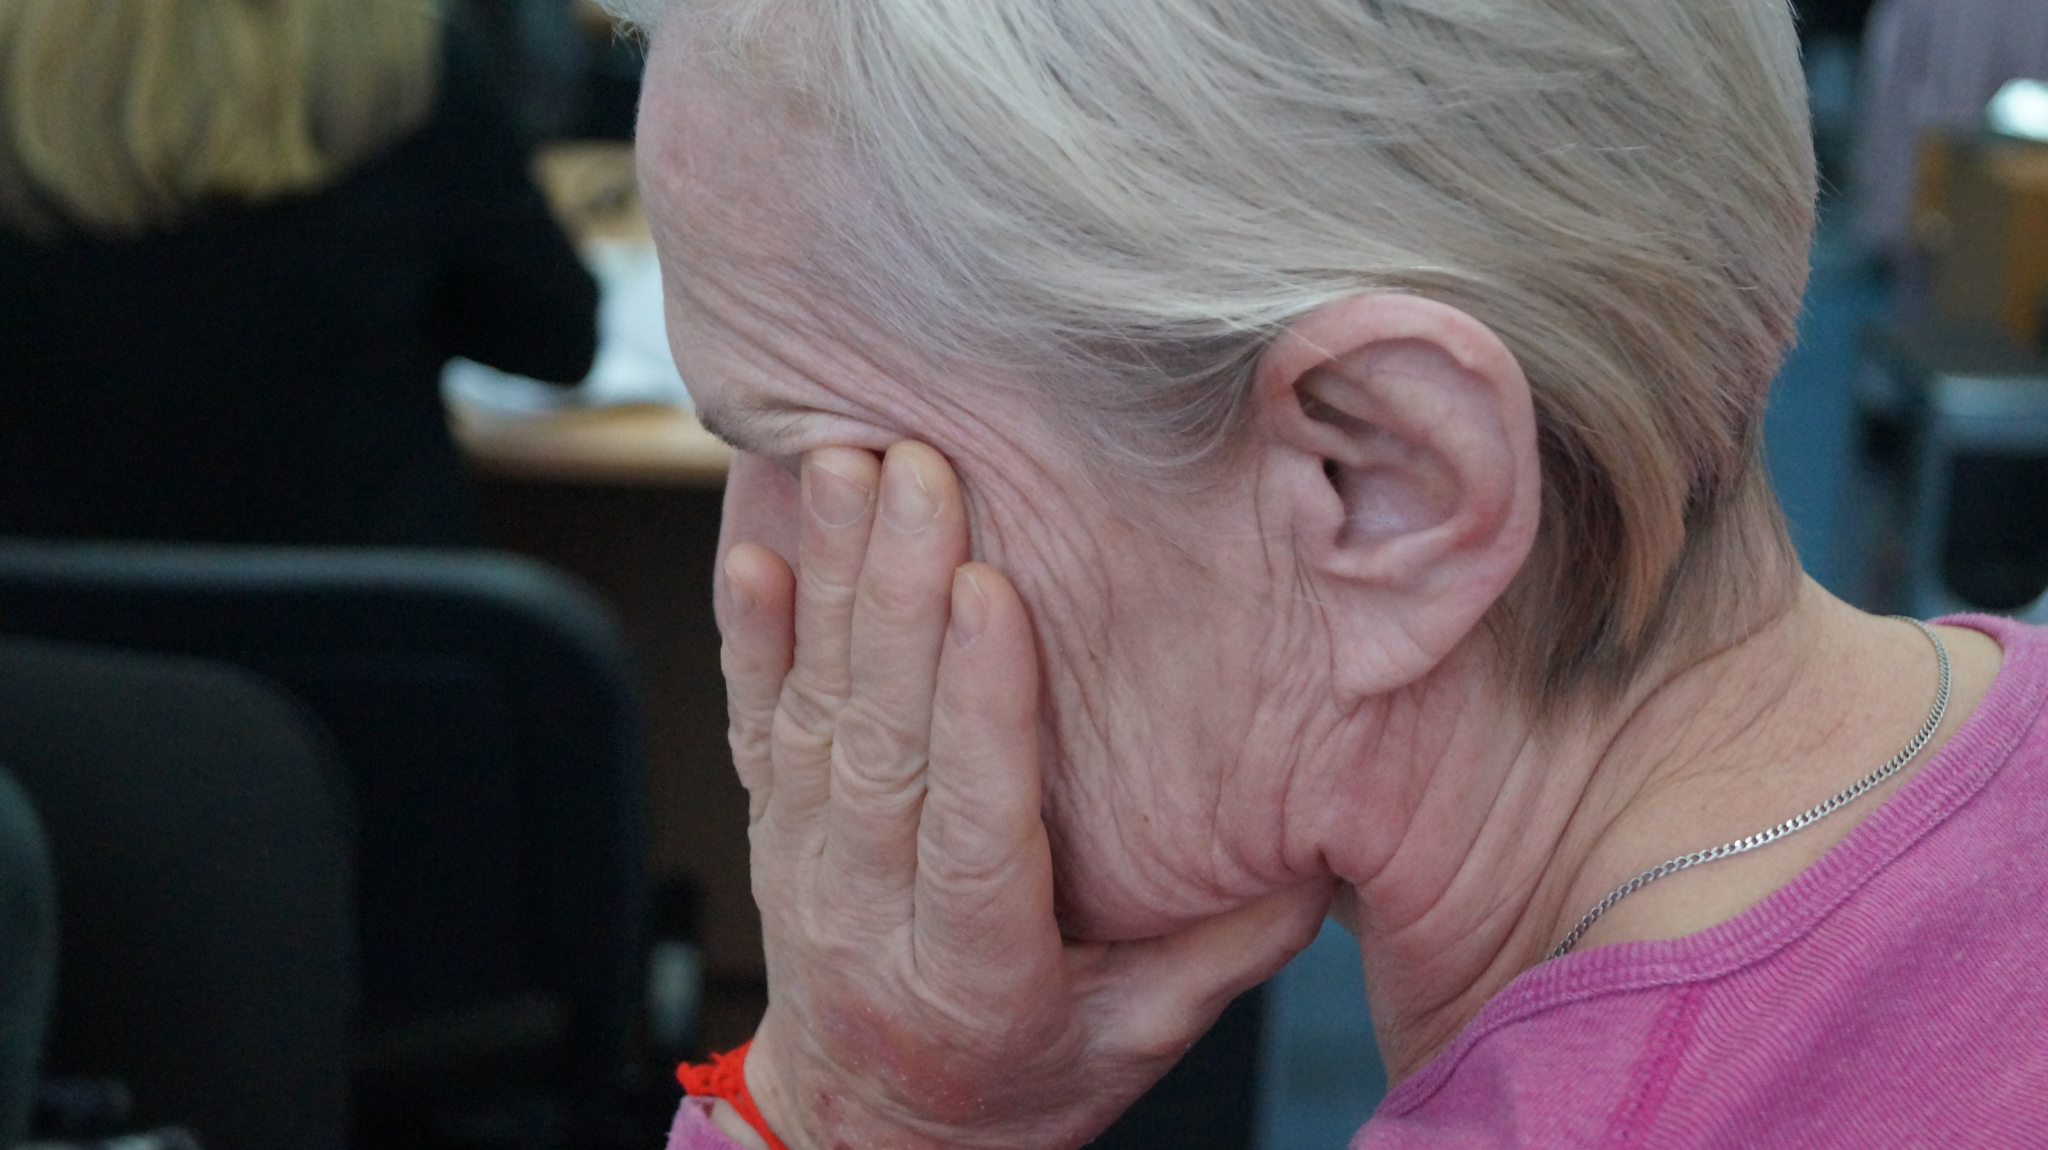 Связали и требовали денег: в Мордовии трое цыган ограбили одинокую пенсионерку